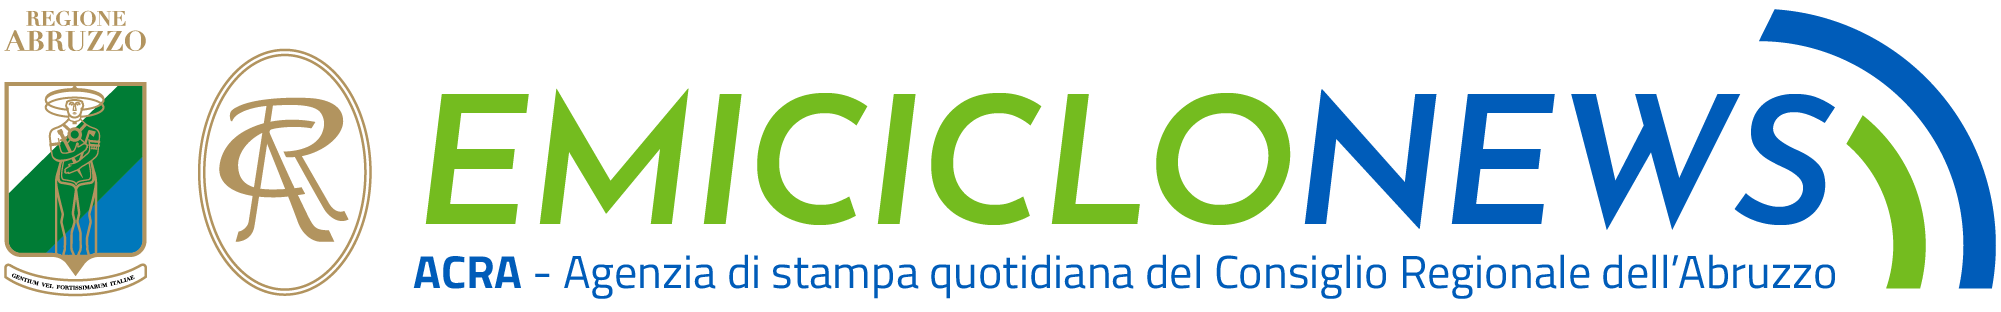 Emiciclo News - ACRA - Agenzia di stampa quotidiana del Consiglio Regionale dell'Abruzzo